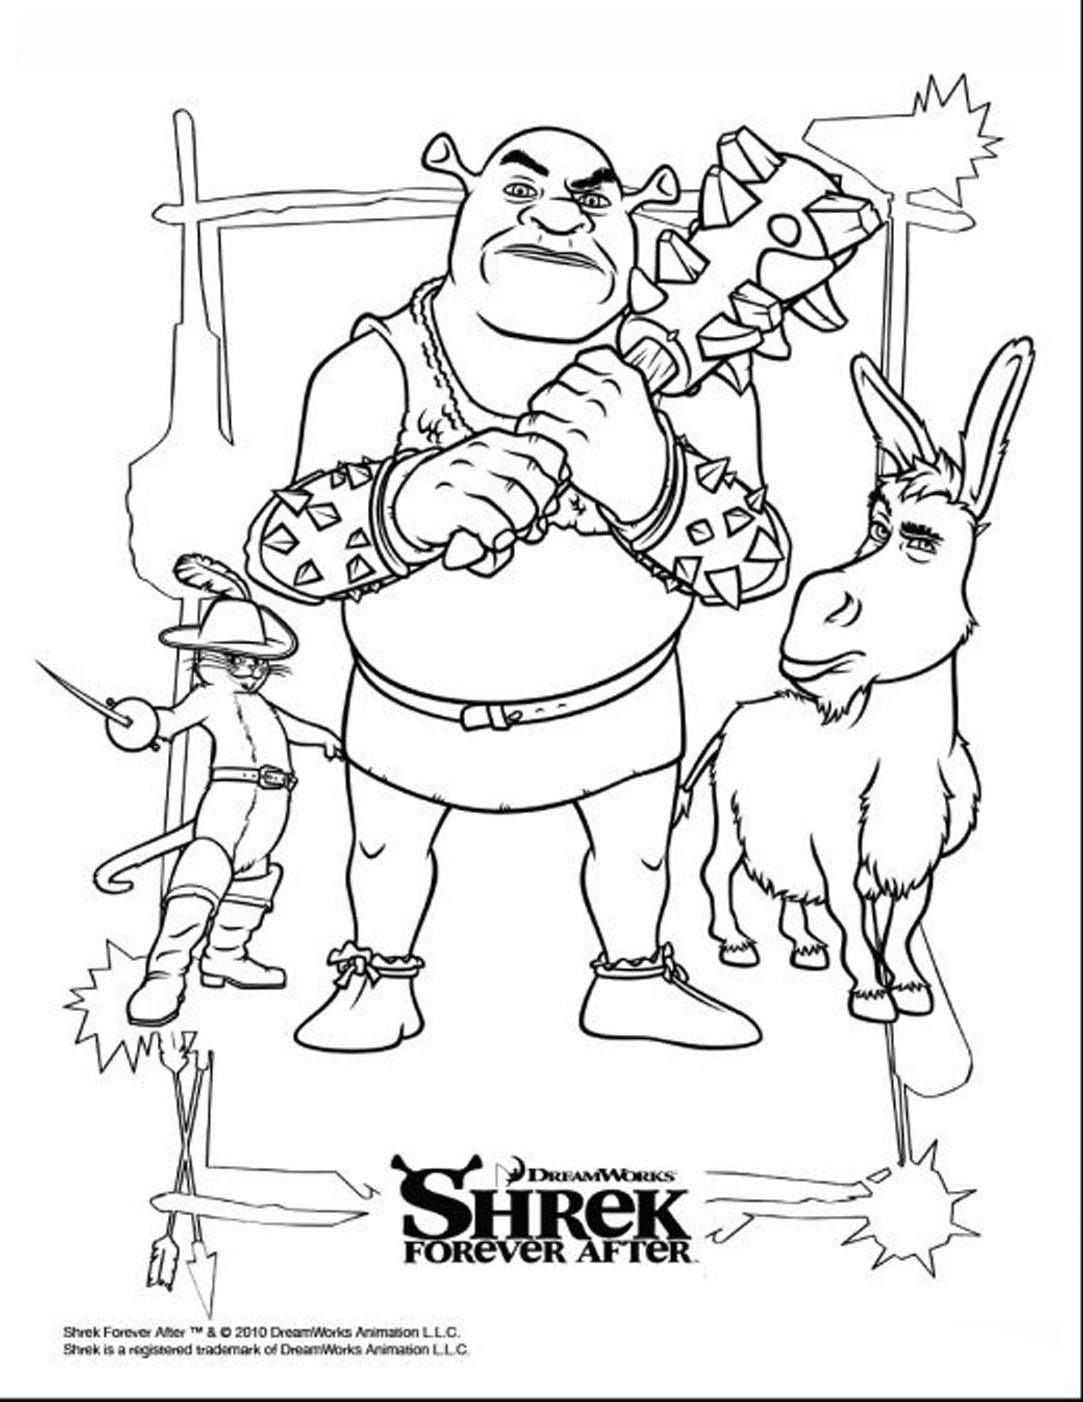 Collage gratis de Shrek 4, con el ogro, el burro y el gatito